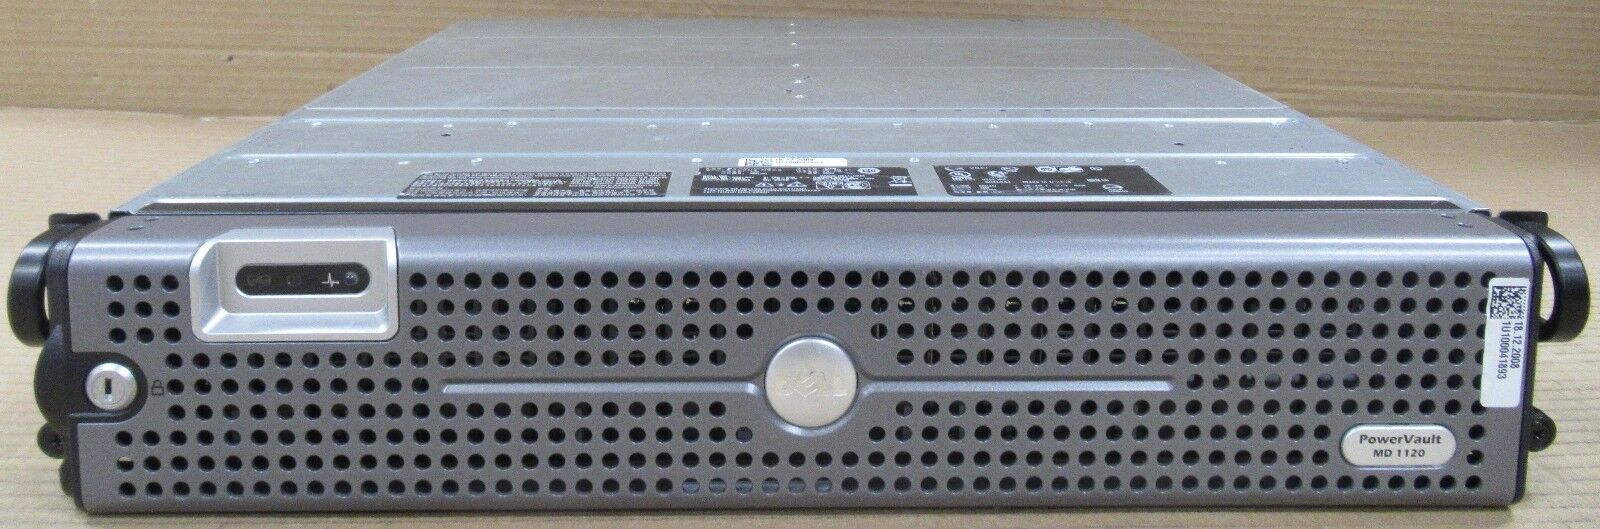 Dell PowerVault MD1120 2U 24 Bay 10 x 73GB SAS HDD Storage Array 1 x Controller 